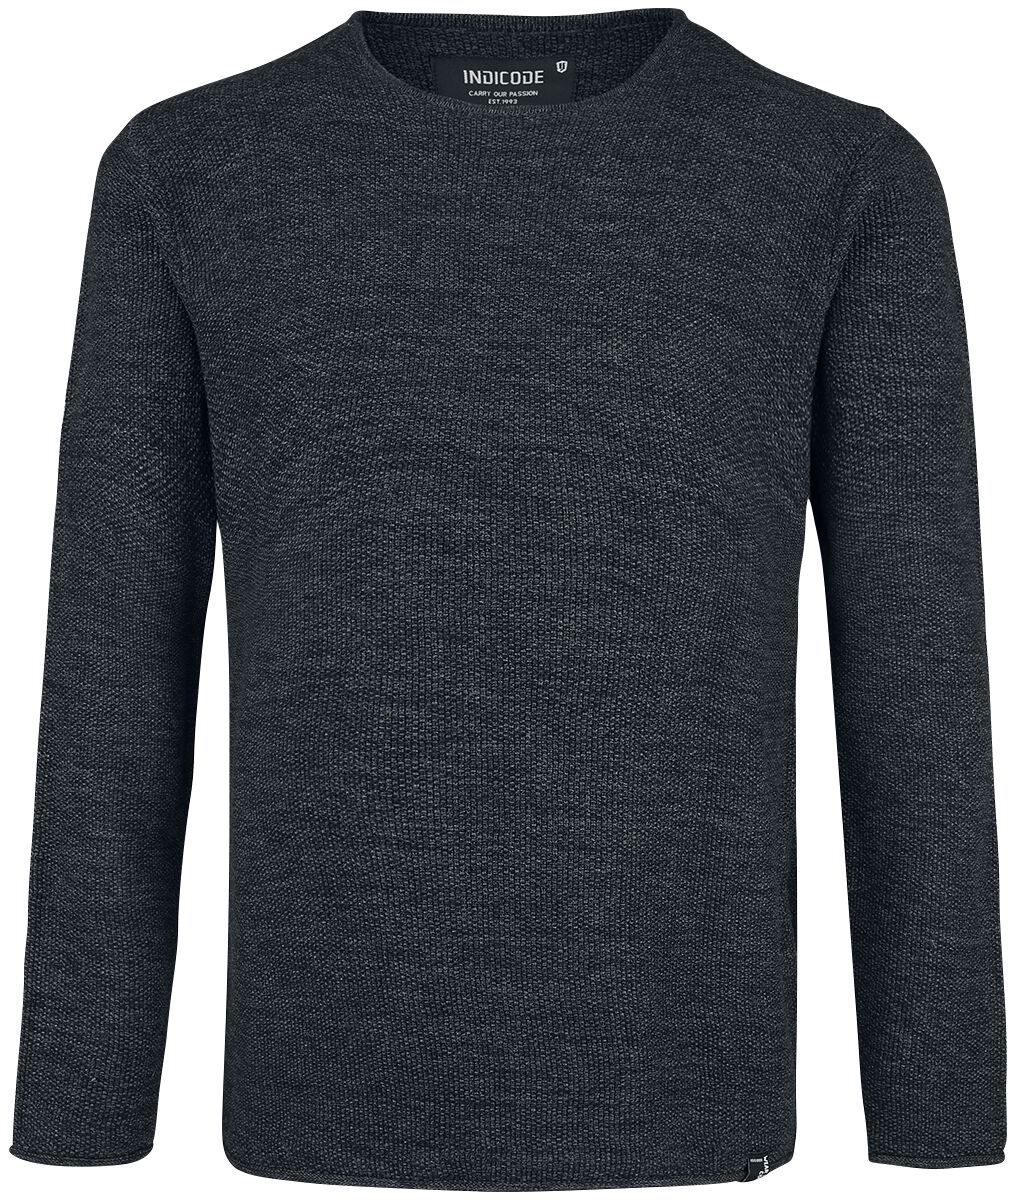 Indicode Sweatshirt - Kristian - S bis XXL - für Männer - Größe XL - schwarz